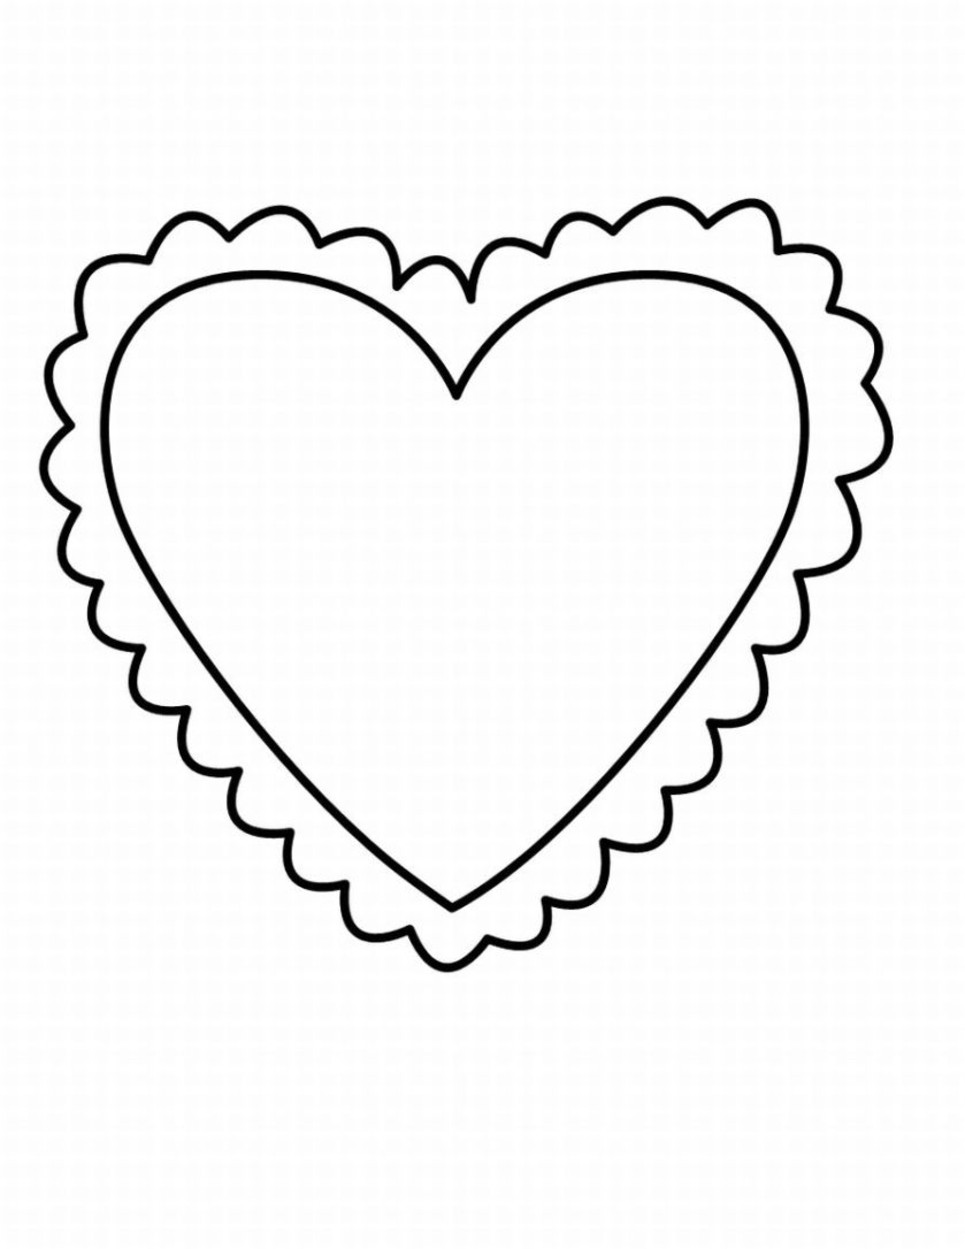 50 buc tranh to mau hinh trai tim dep nhat danh tang cho be 12 - 50+ bức tranh tô màu hình trái tim đẹp nhất dành tặng cho bé